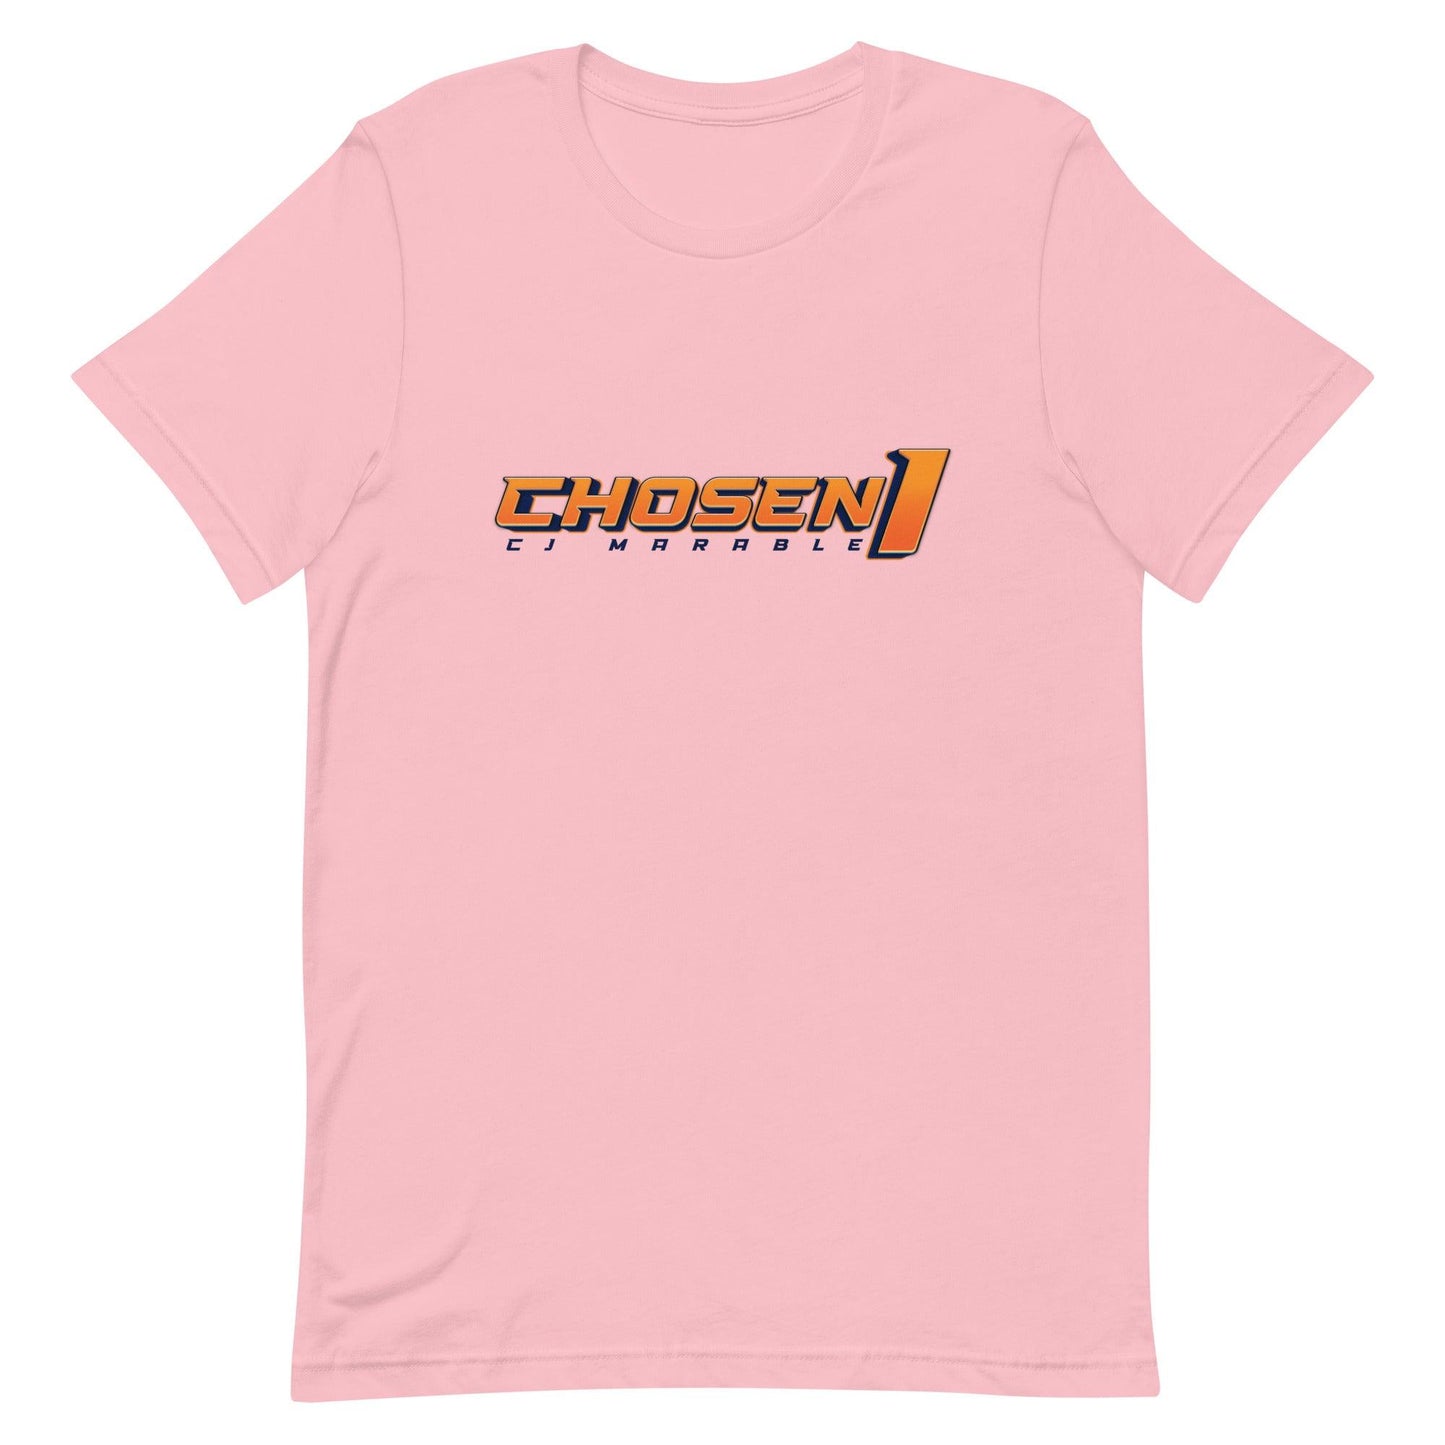 CJ Marable "Choosen" t-shirt - Fan Arch